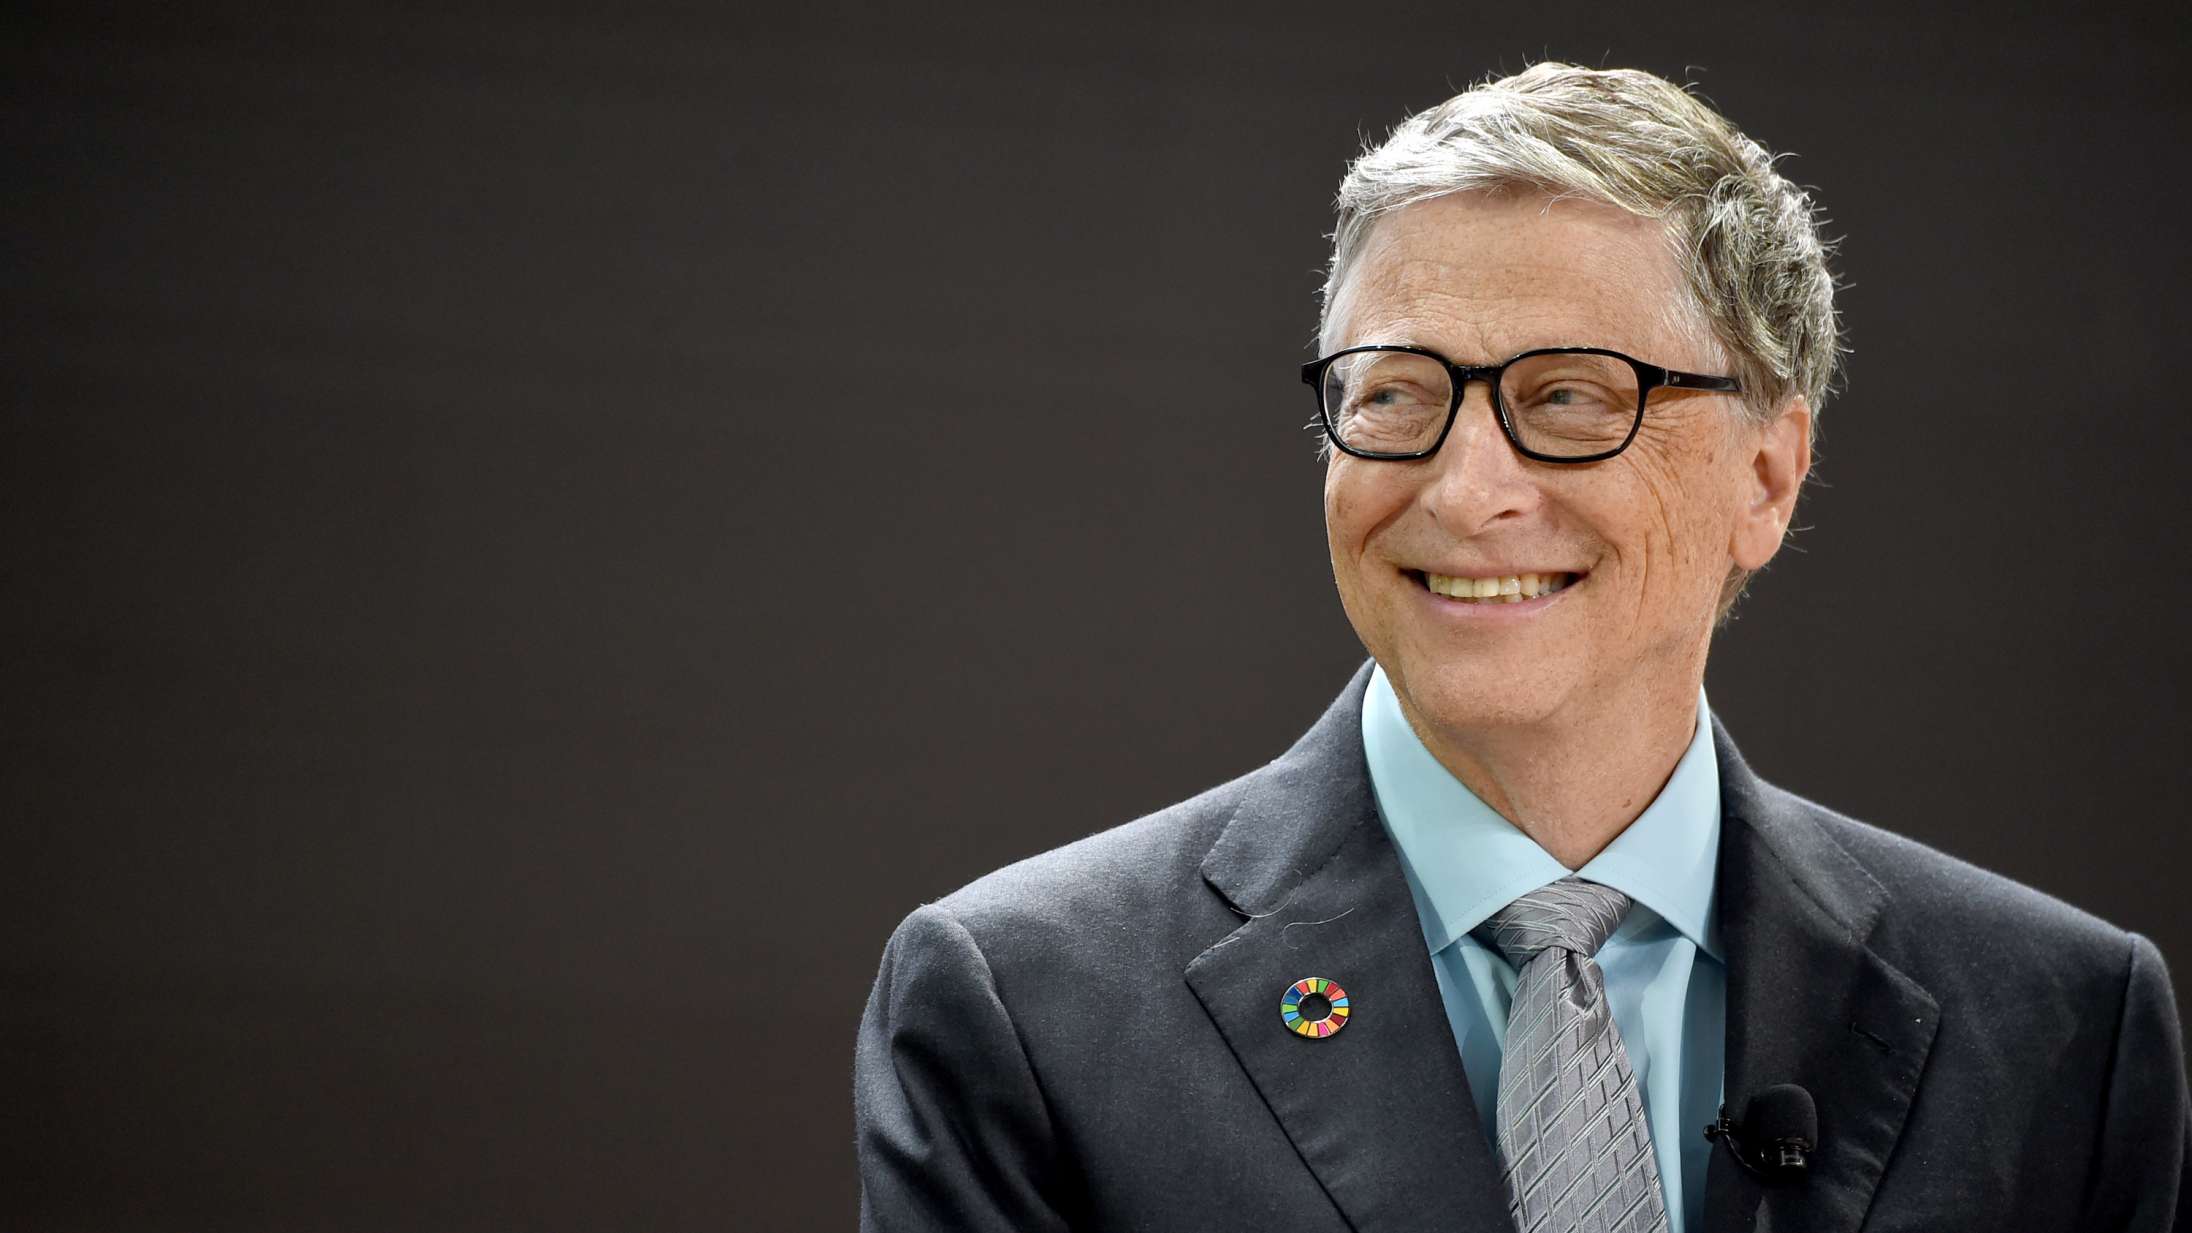 Hvorfor er Bill Gates altid skurken i konspirationsteorier?